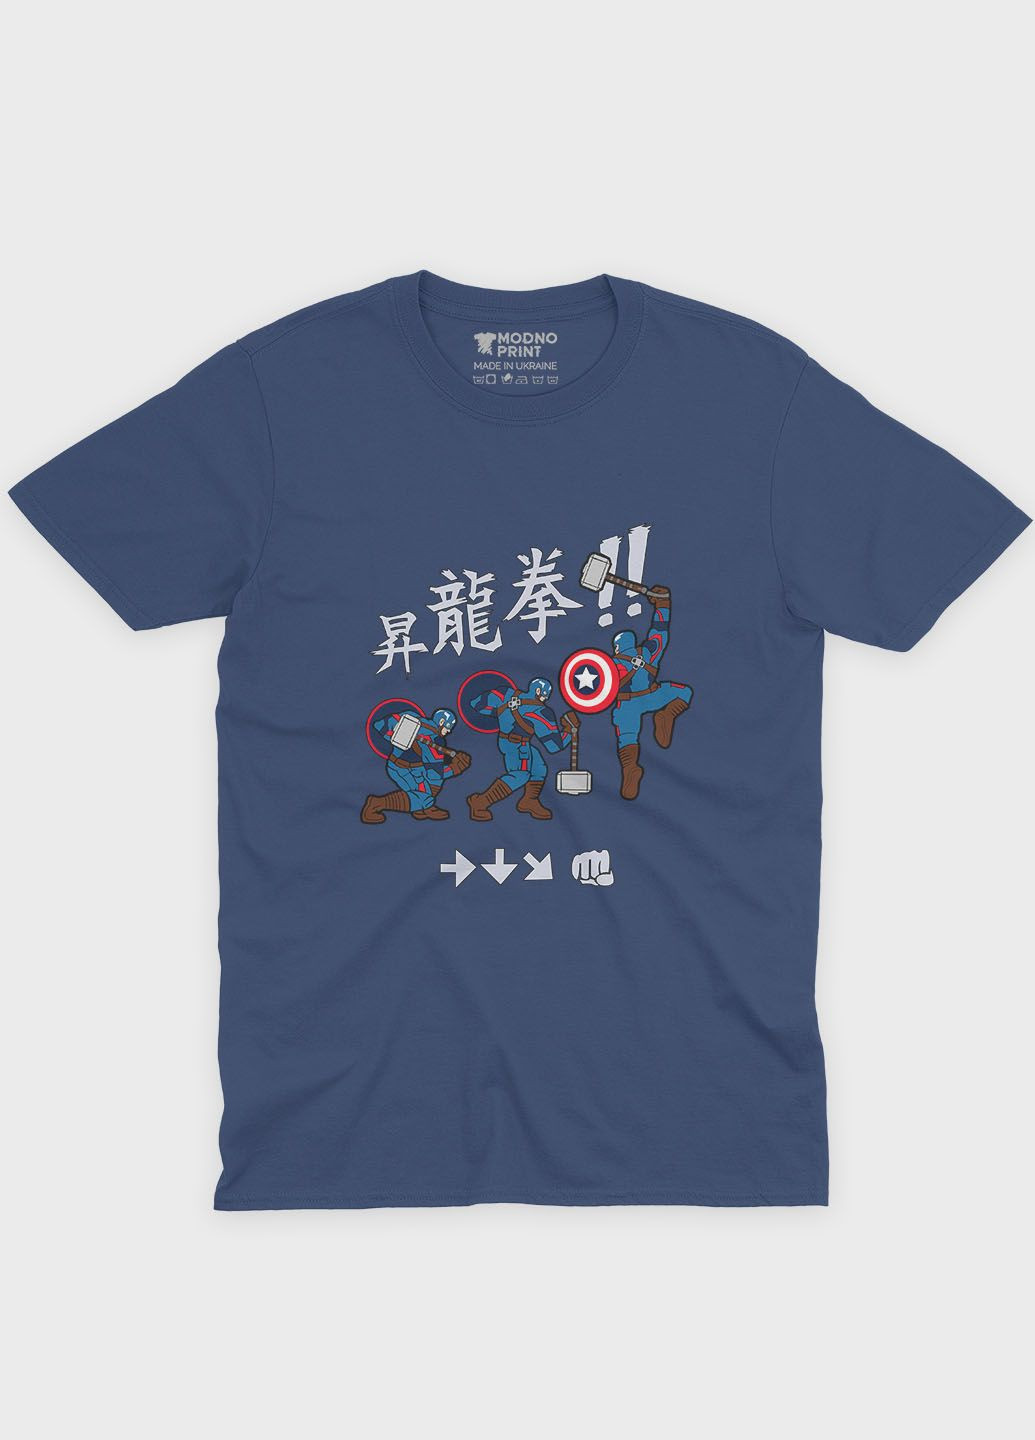 Темно-синяя демисезонная футболка для девочки с принтом супергероя - капитан америка (ts001-1-nav-006-022-009-g) Modno